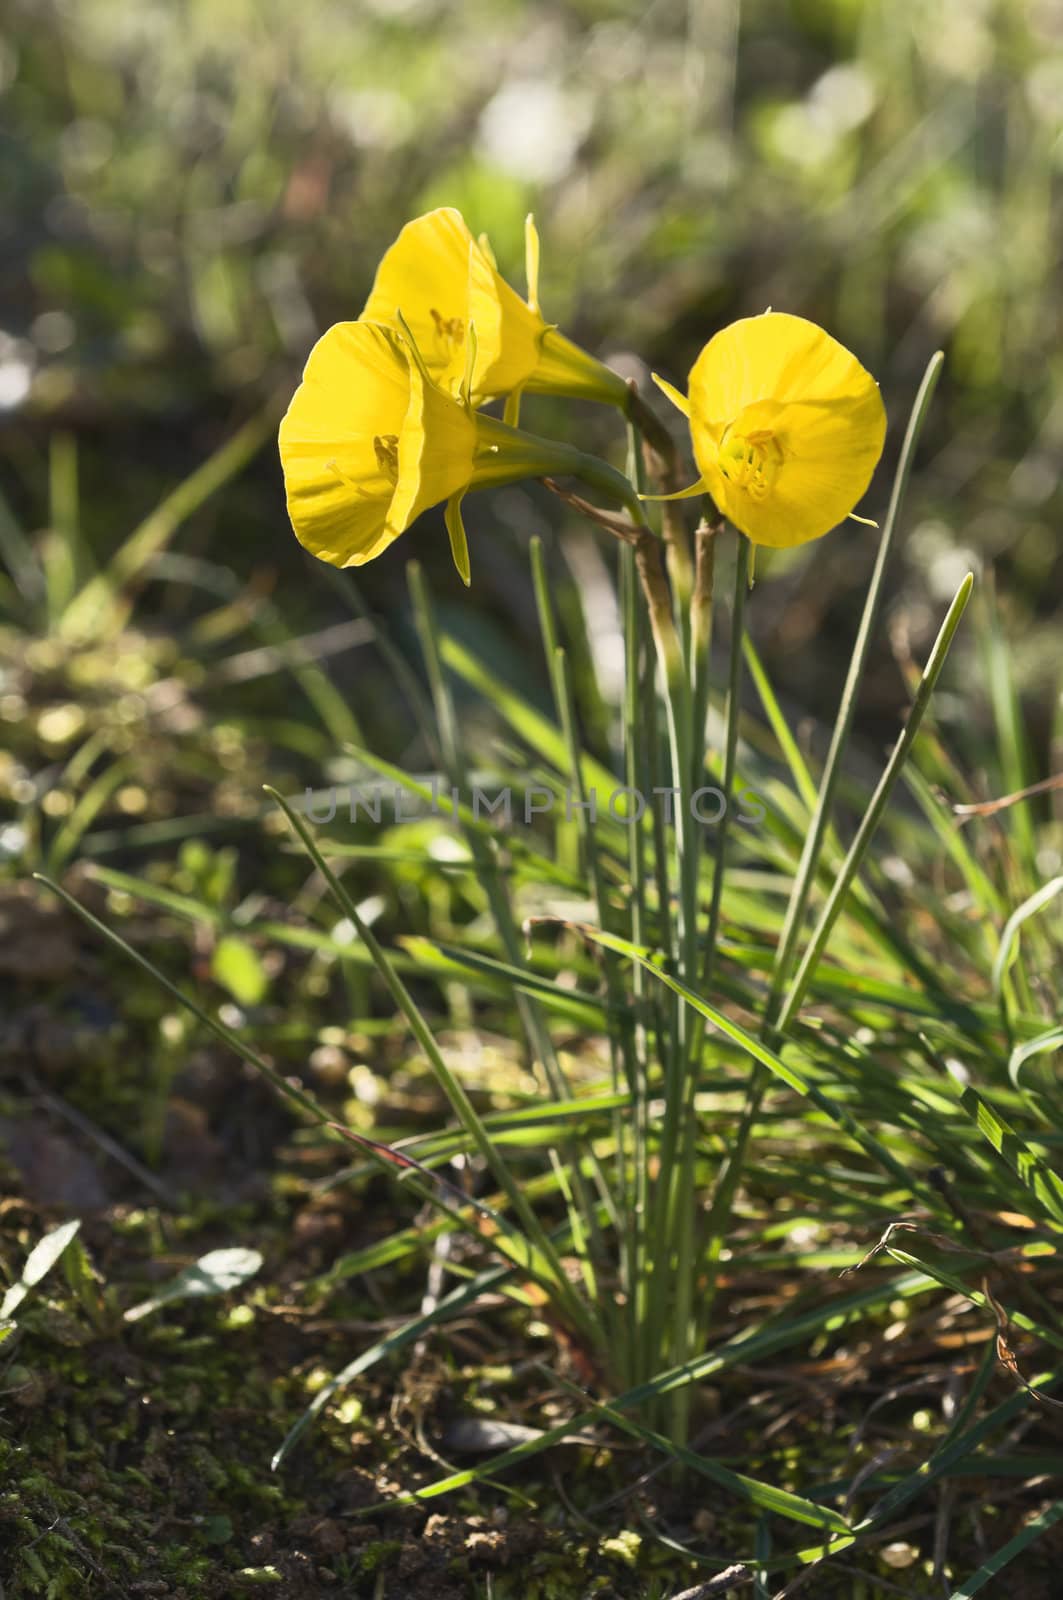 Hoop petticoat daffodil by mrfotos